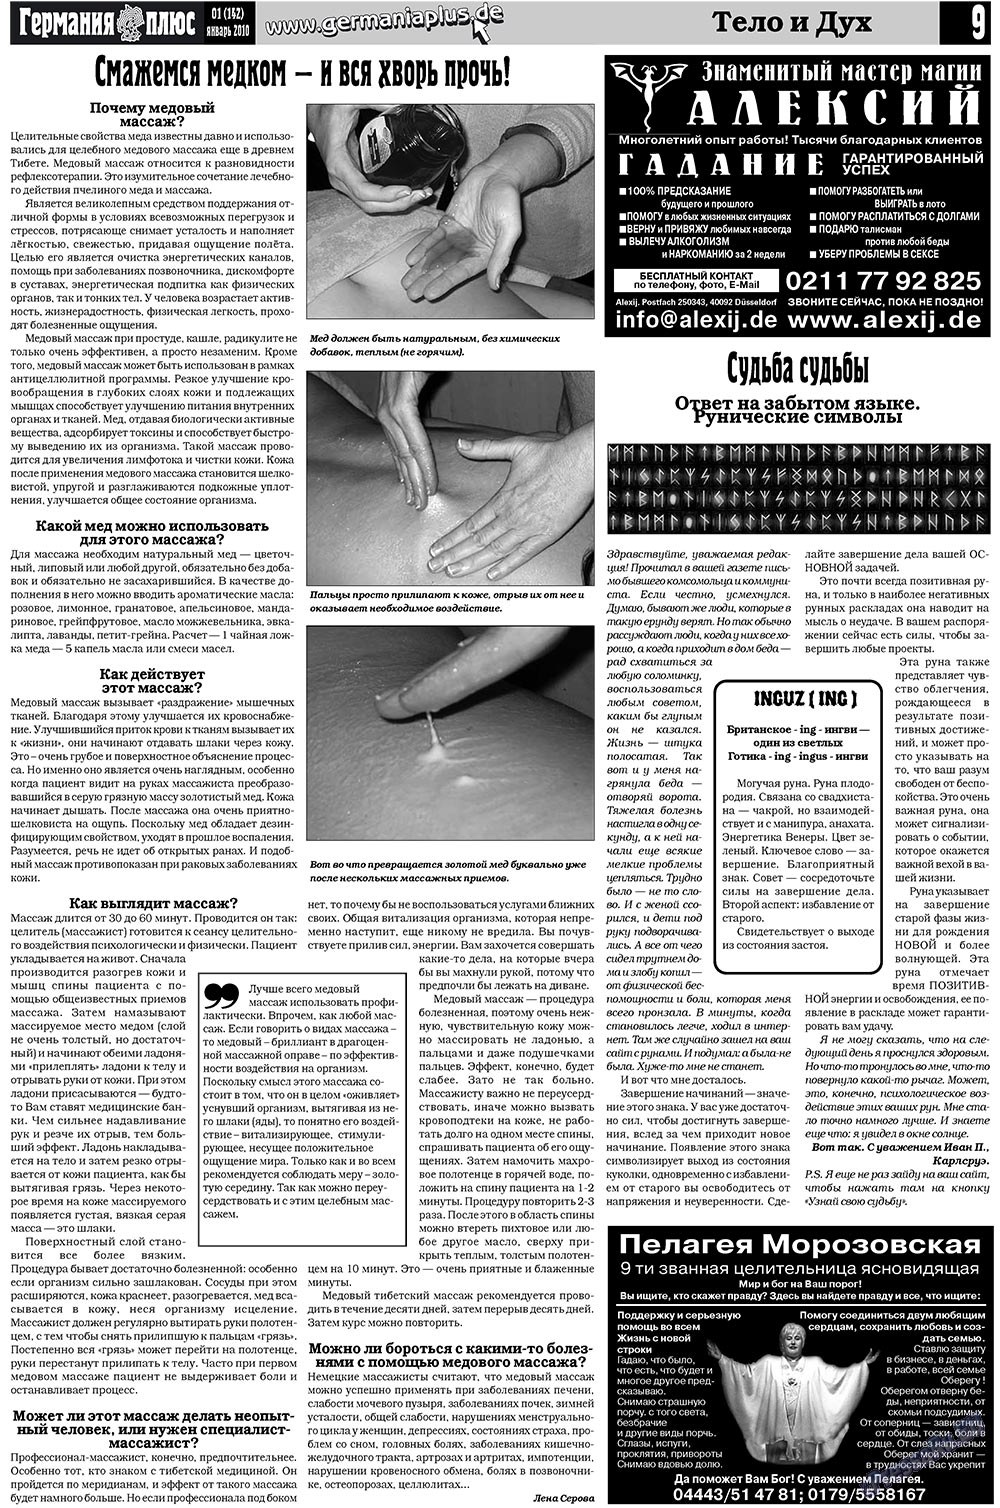 Германия плюс (газета). 2010 год, номер 1, стр. 9